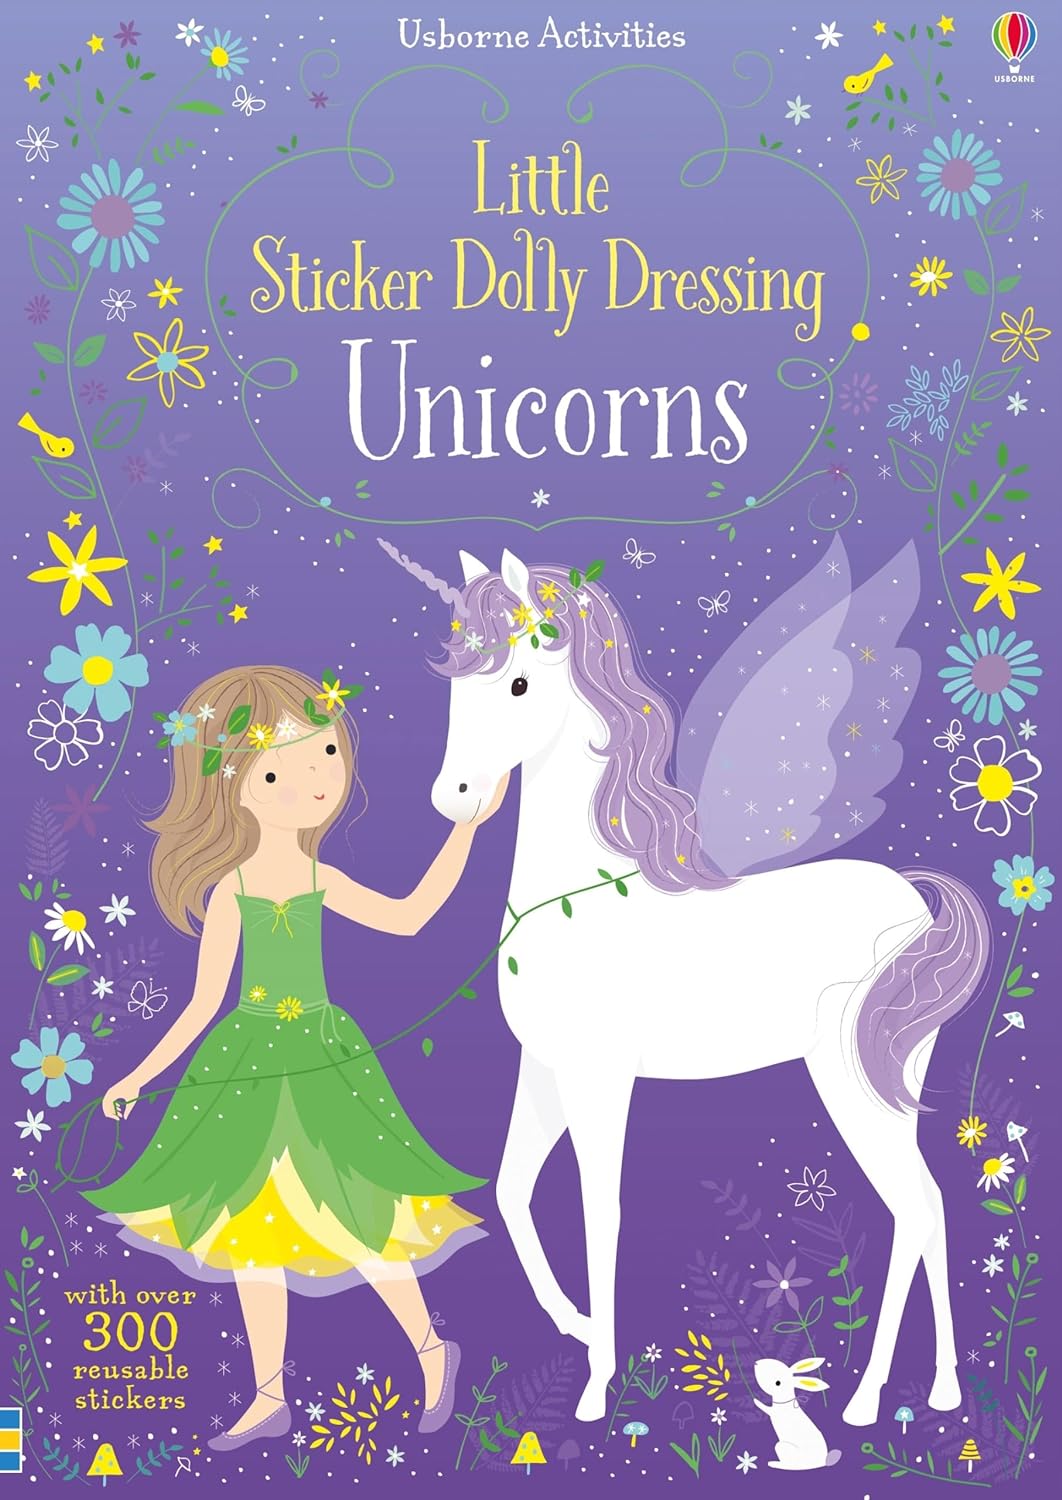 Usborne Little Sticker Dolly Dressing Books